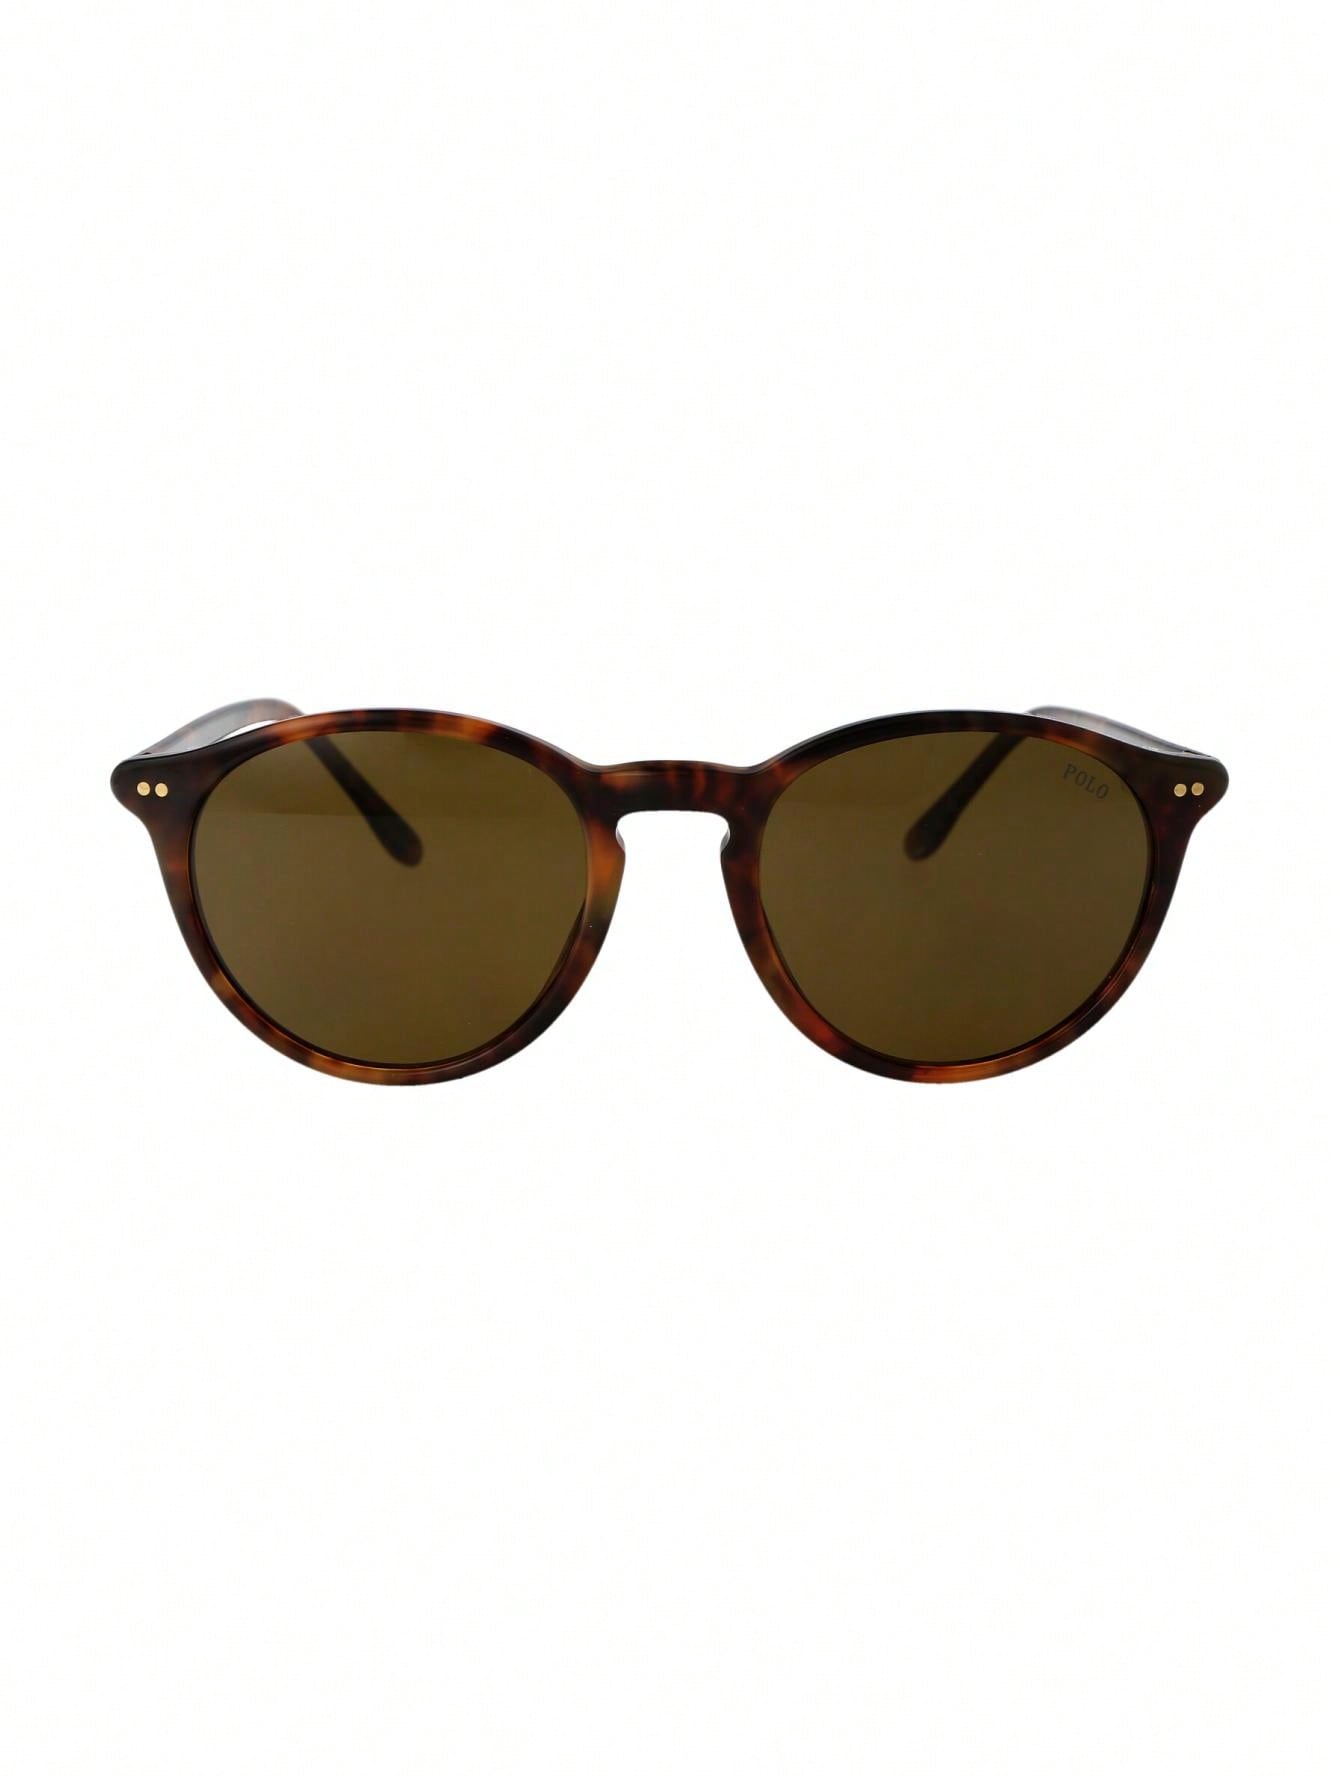 Мужские солнцезащитные очки Polo Ralph Lauren DECOR 0PH4193501773, многоцветный солнцезащитные очки ralph lauren квадратные коричневый